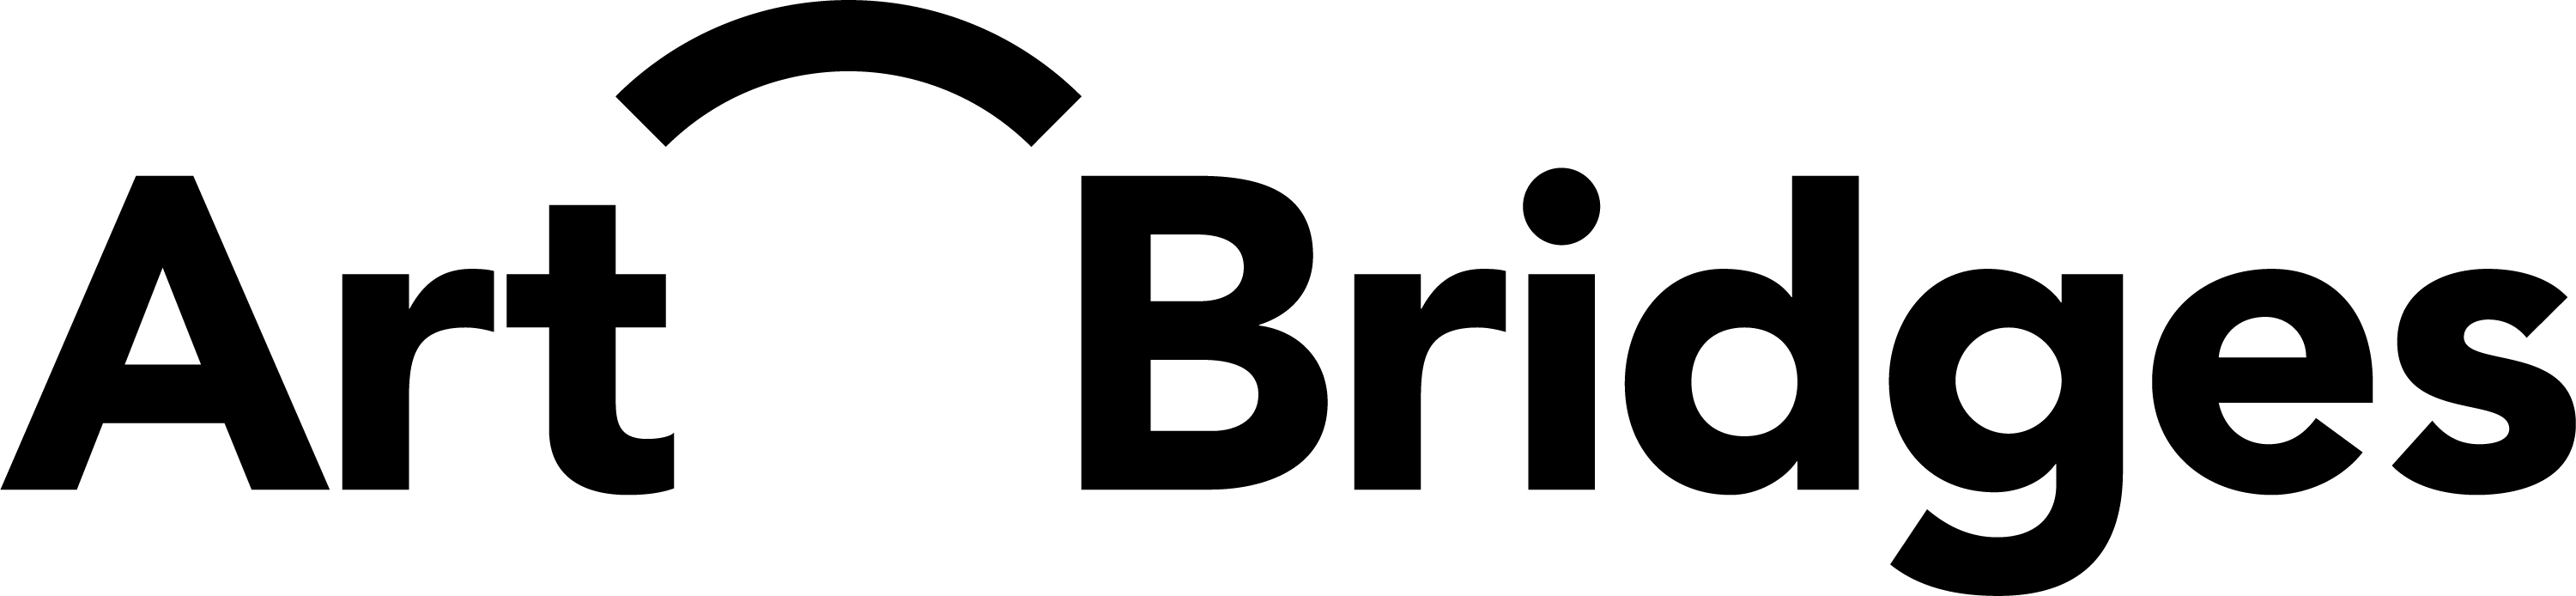 Art Bridges logo